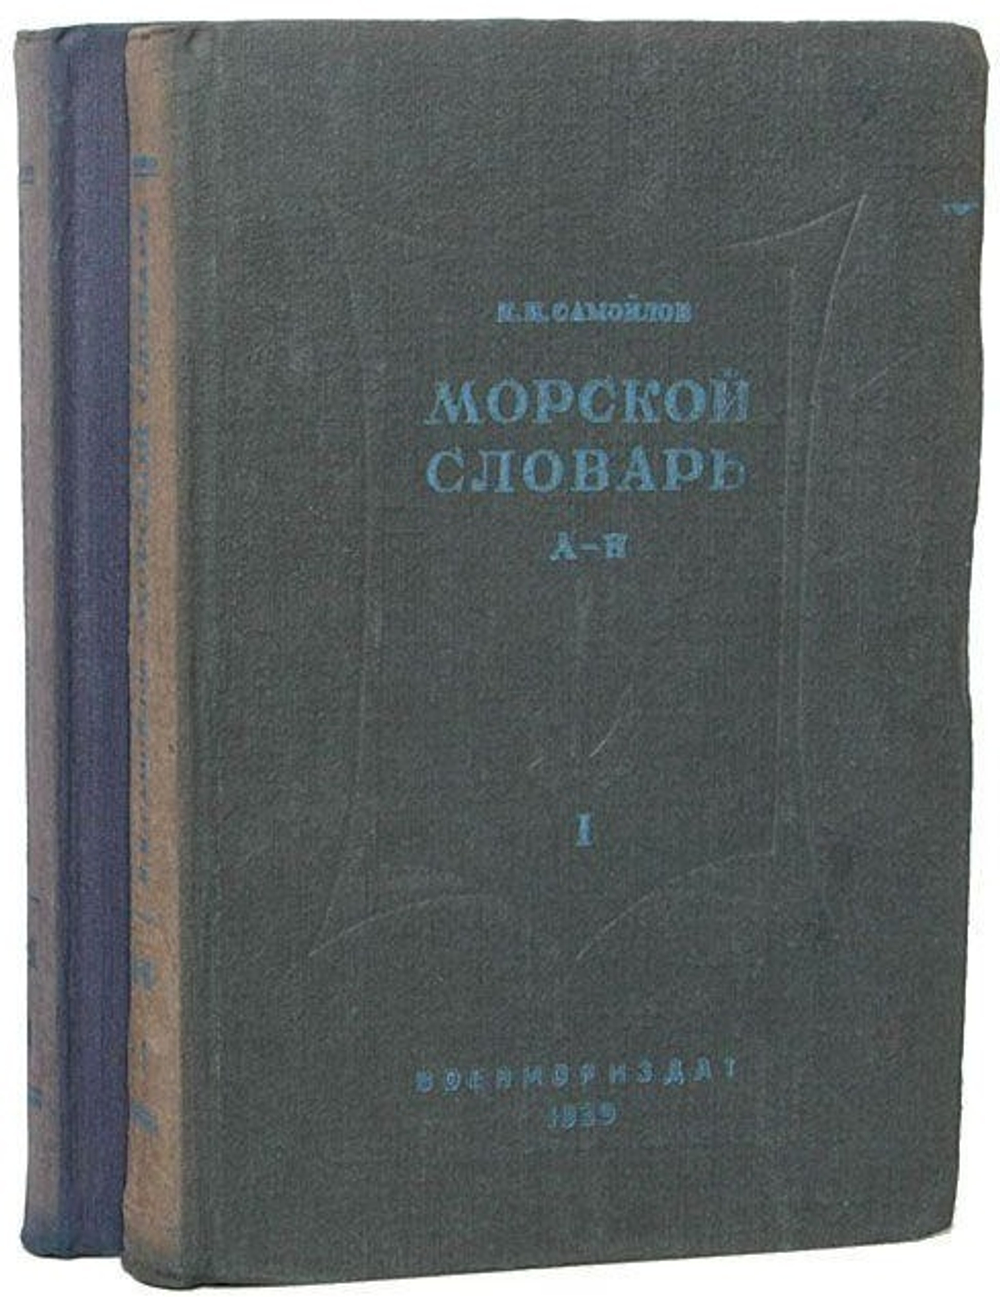 Морской словарь (комплект из 2 книг). Самойлов К. И.